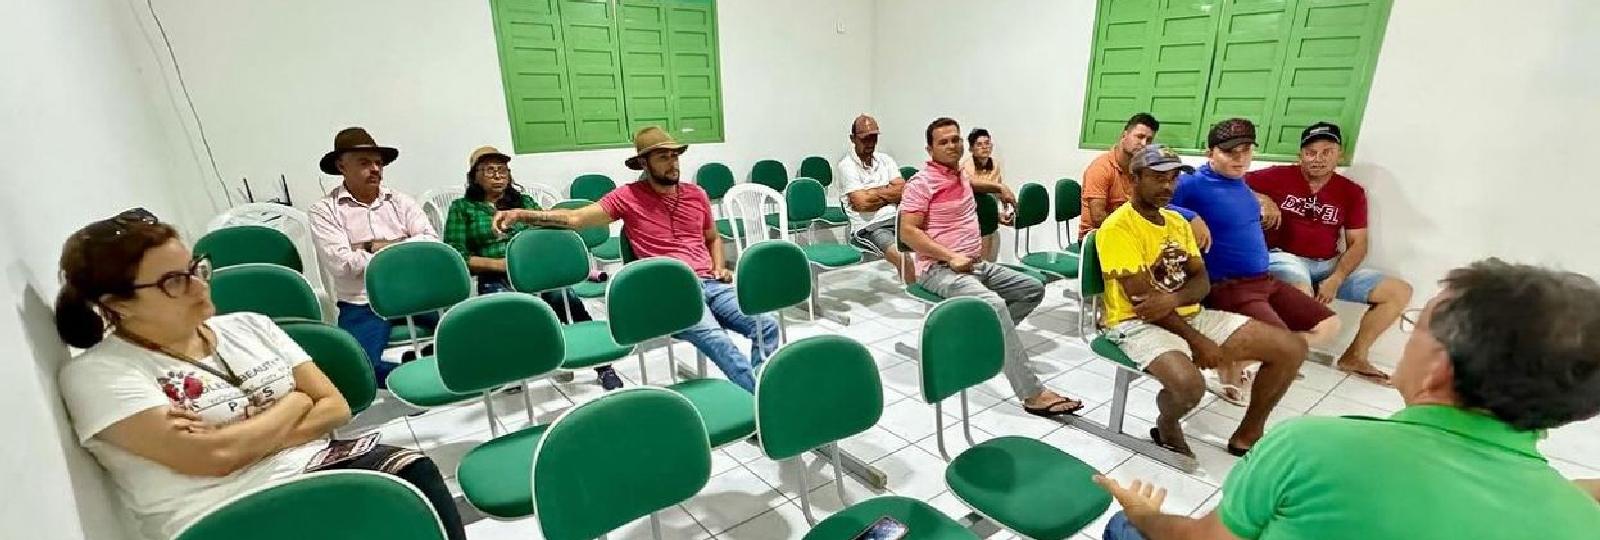 A secretaria municipal de agricultura e meio ambiente, esteve promovendo um encontro com a associação de carprinocultores de São José dos Cordeiros.